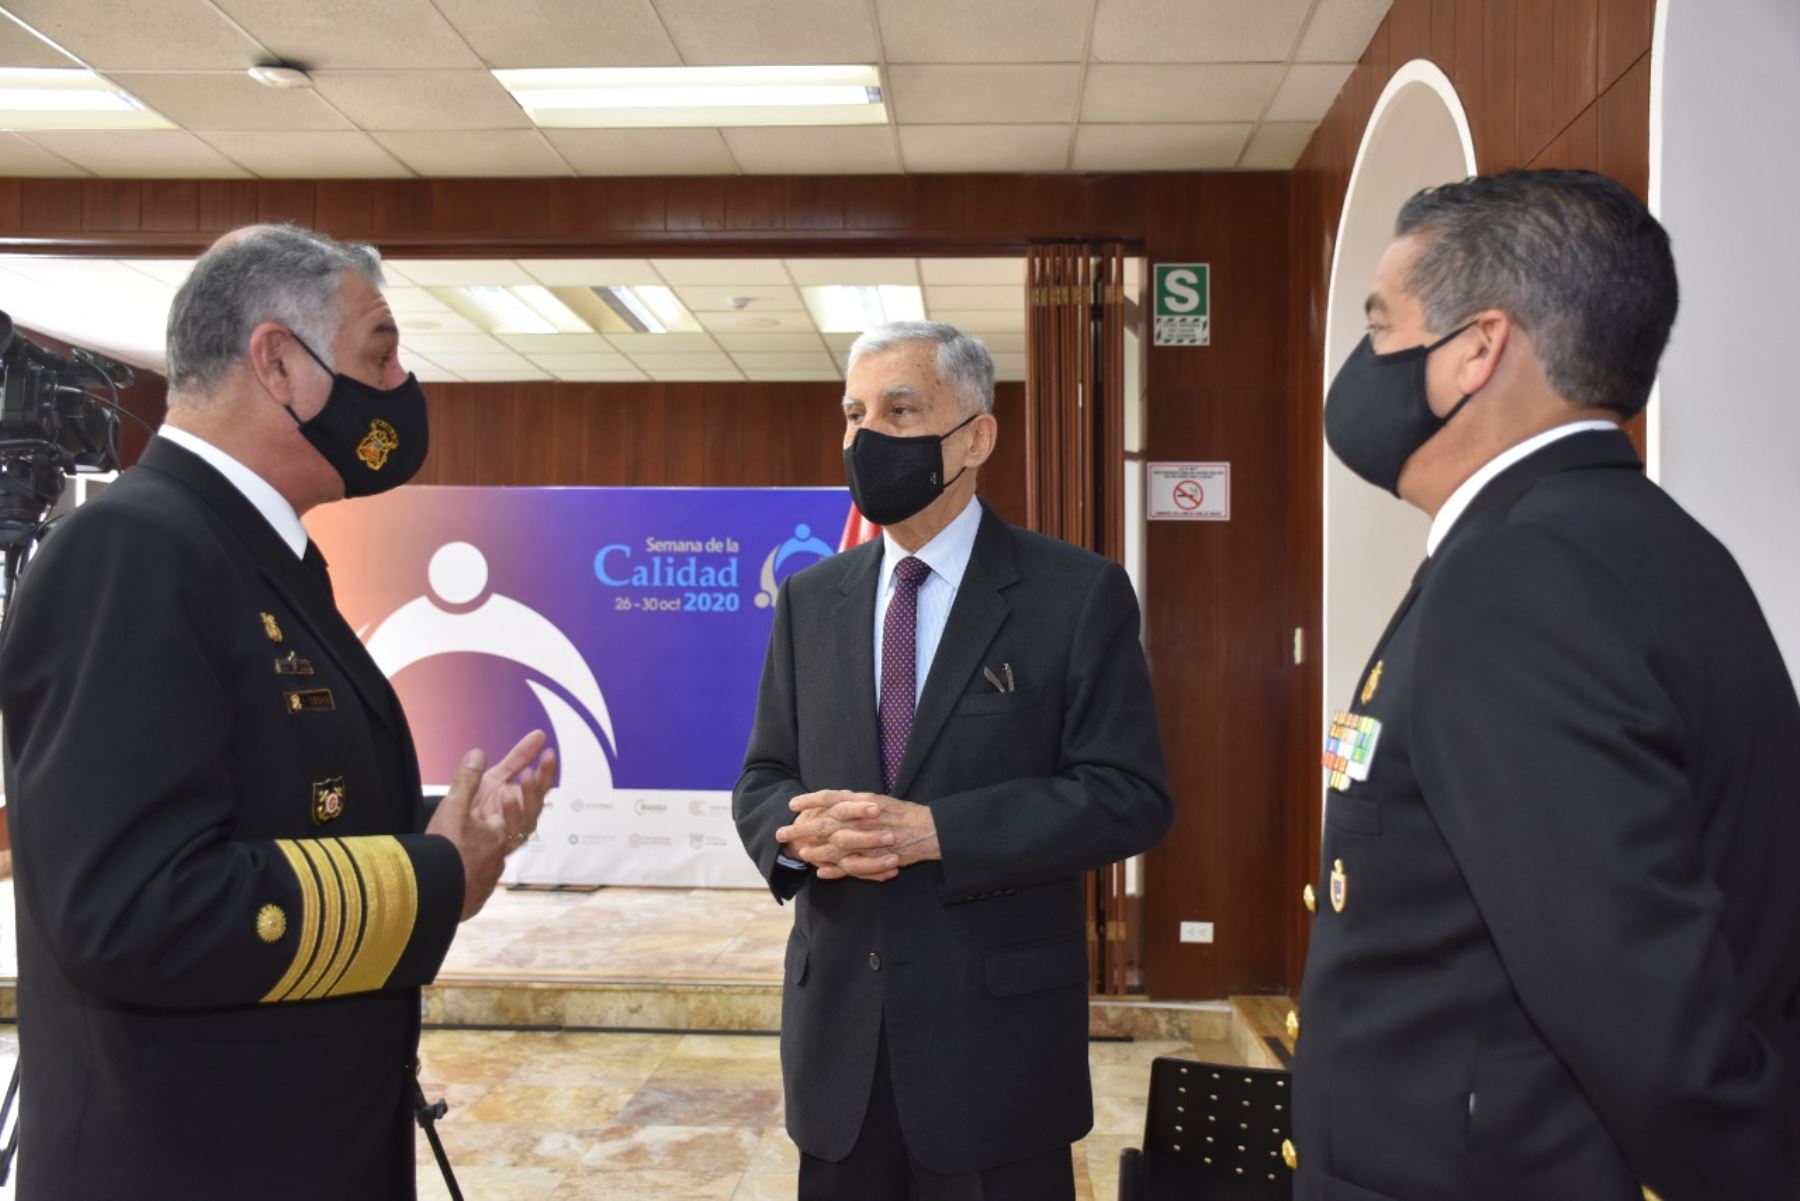 Marina de Guerra del Perú recibió el “Premio Nacional a la Calidad” y la medalla Líder en Calidad categoría Oro. Foto: Marina de Guerra del Perú